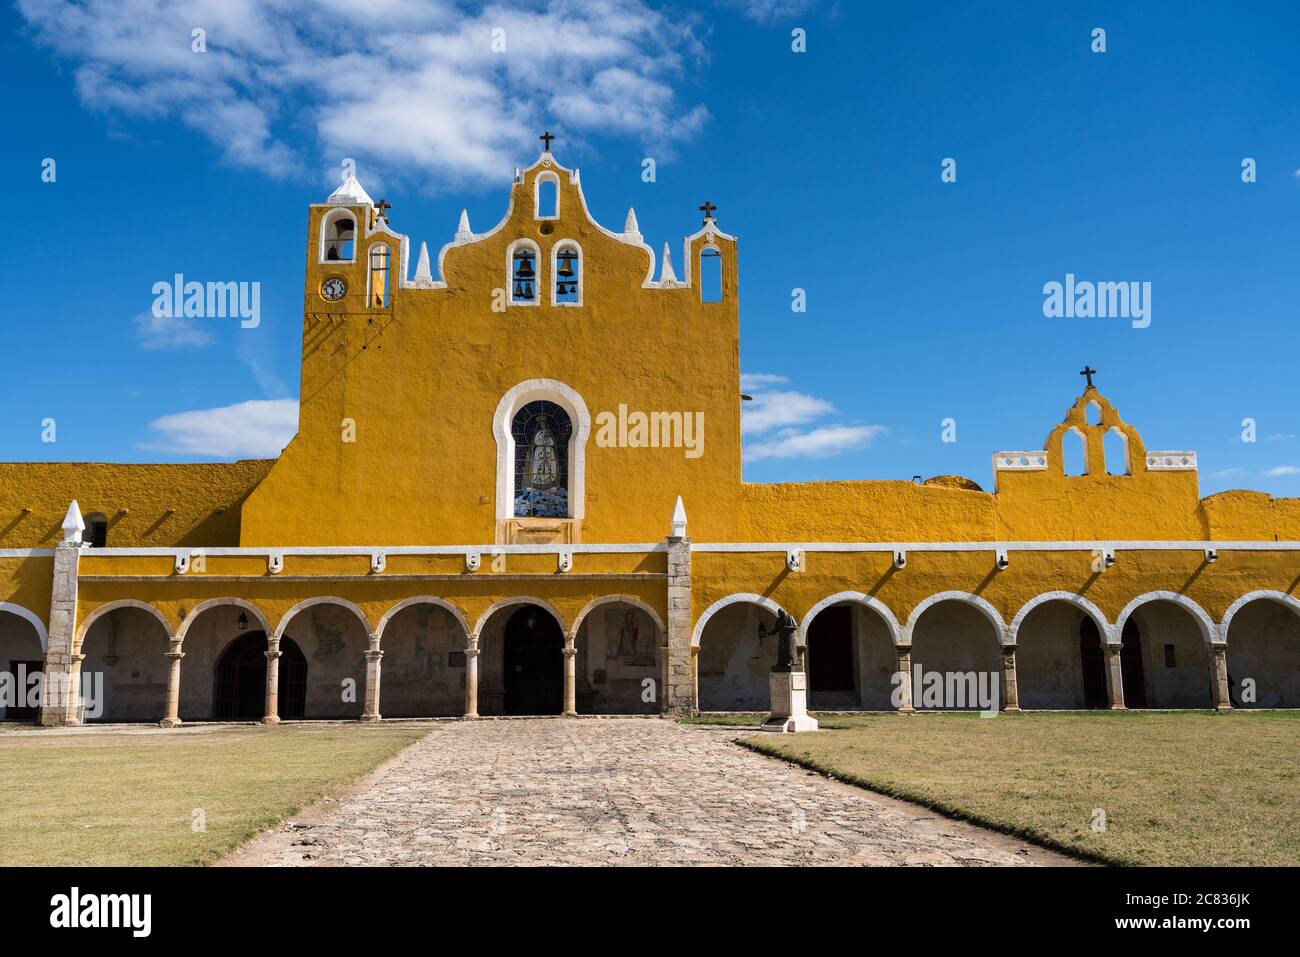 Le couvent de San Antonio ou Saint Anthony de Padoue fut fondé en 1549 et complété en 1562. Il a été construit sur la base d'une grande pyramide maya. Banque D'Images